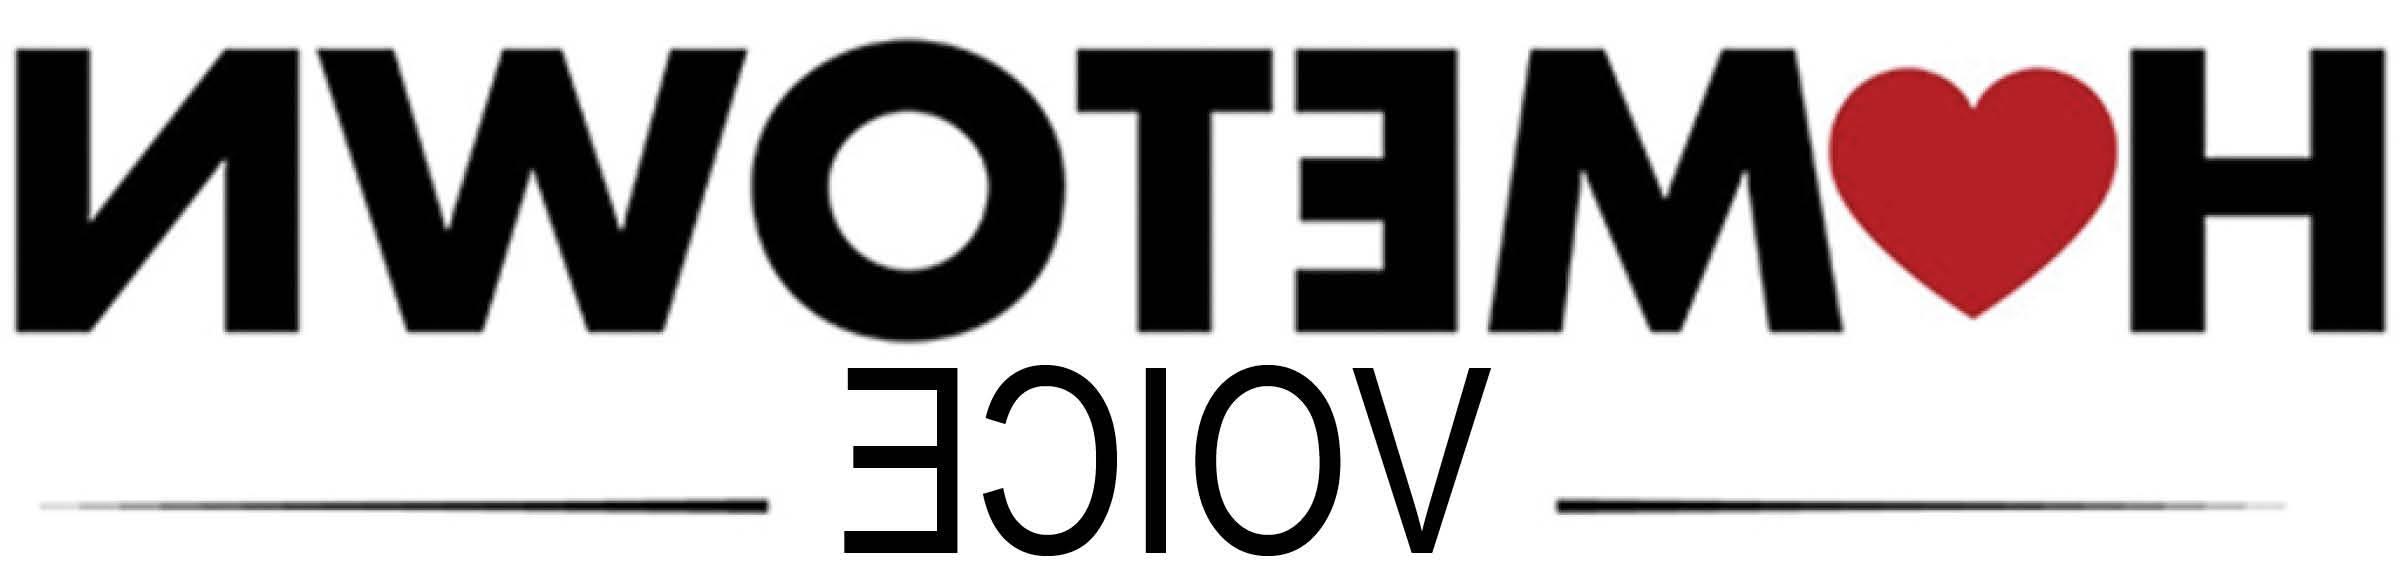 Hometown Voice logo